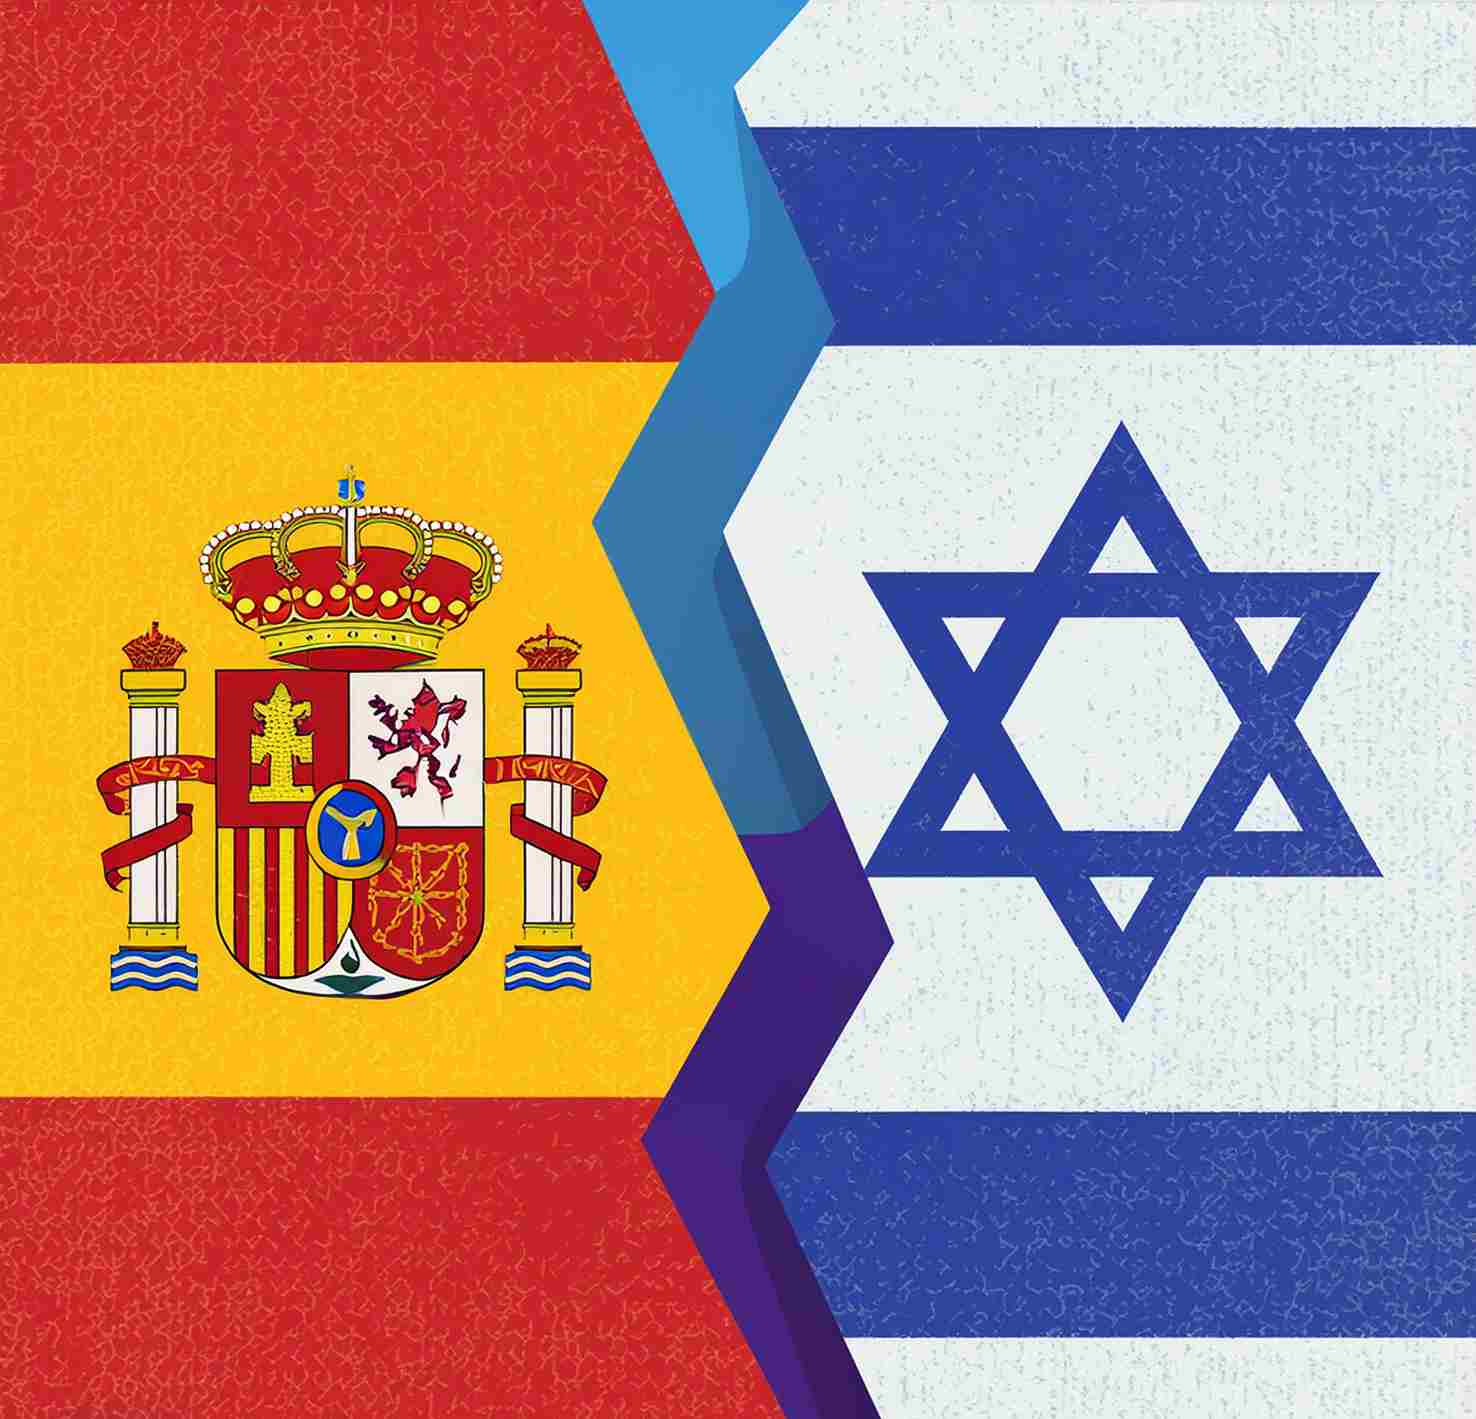 Exportations Espagnoles en chute libre vers Israël suite aux tensions diplomatiques